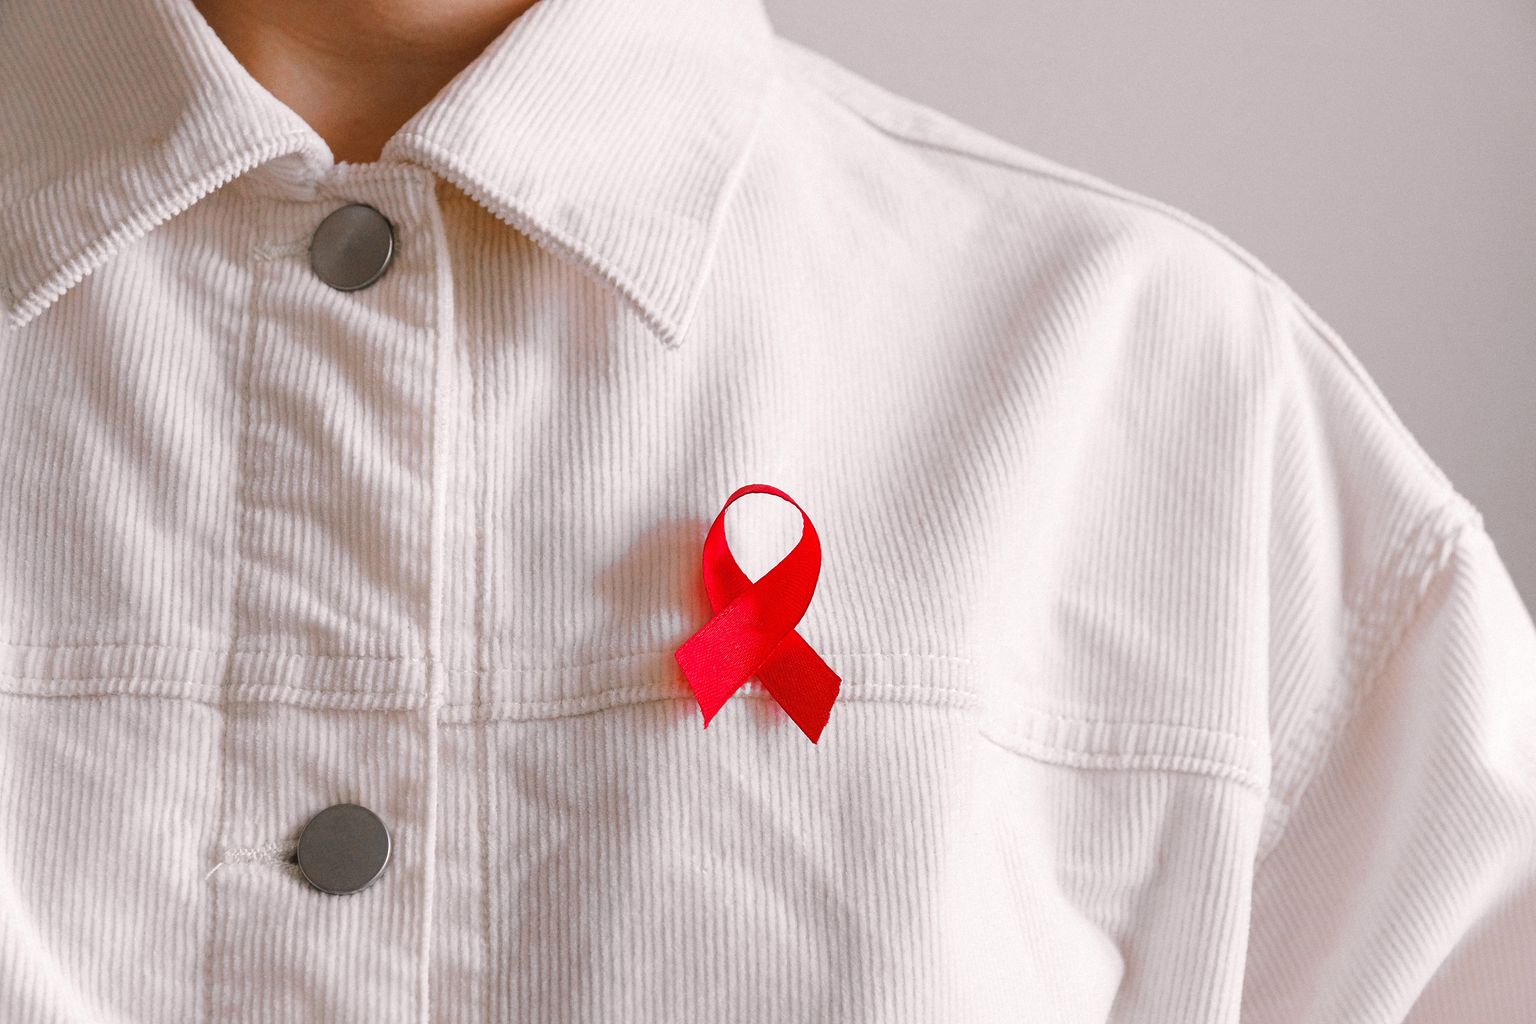 Une personne en chemise blanche porte un ruban rouge, symbole de solidarité avec les personnes infectées par le VIH et les malades du sida.